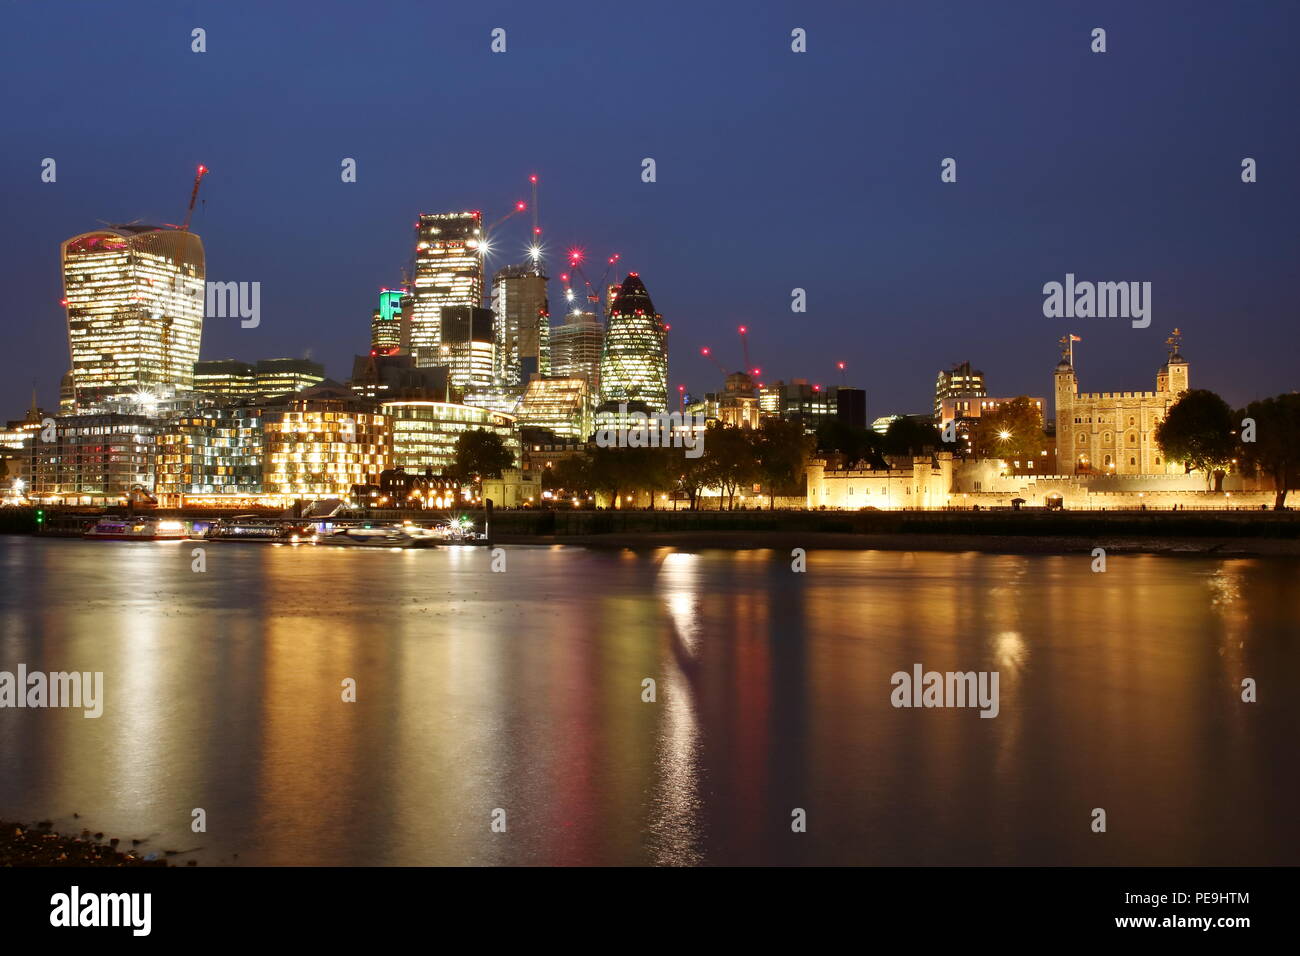 Avec la ville de Londres Thames River par nuit, réflexions sur l'eau, illuminé des gratte-ciel, l'architecture moderne, la Tour de Londres, long exposure Banque D'Images